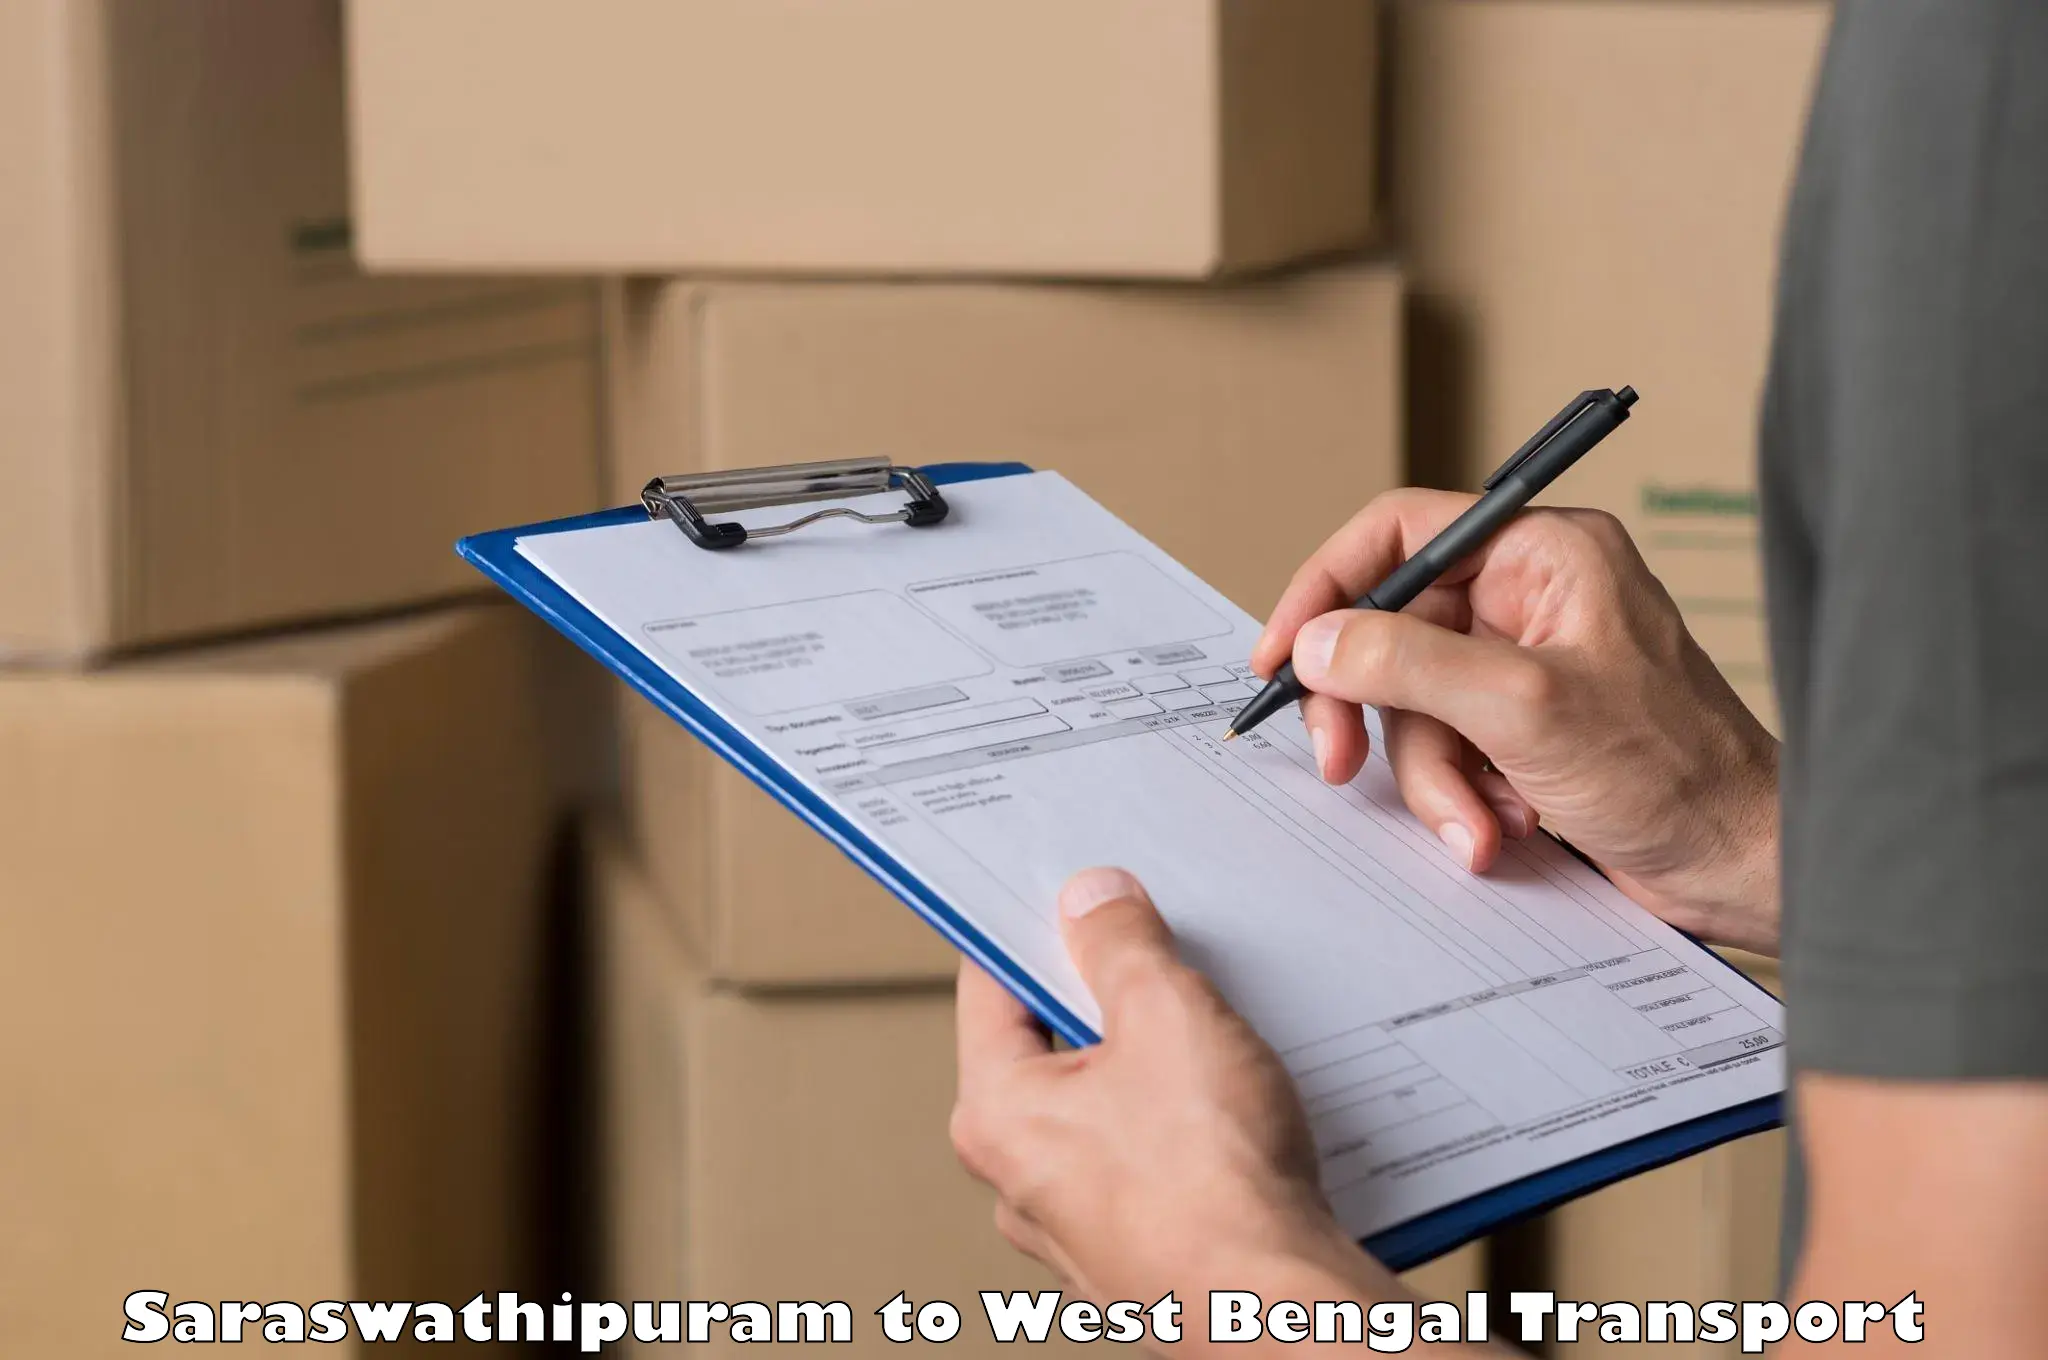 Furniture transport service Saraswathipuram to Bandel